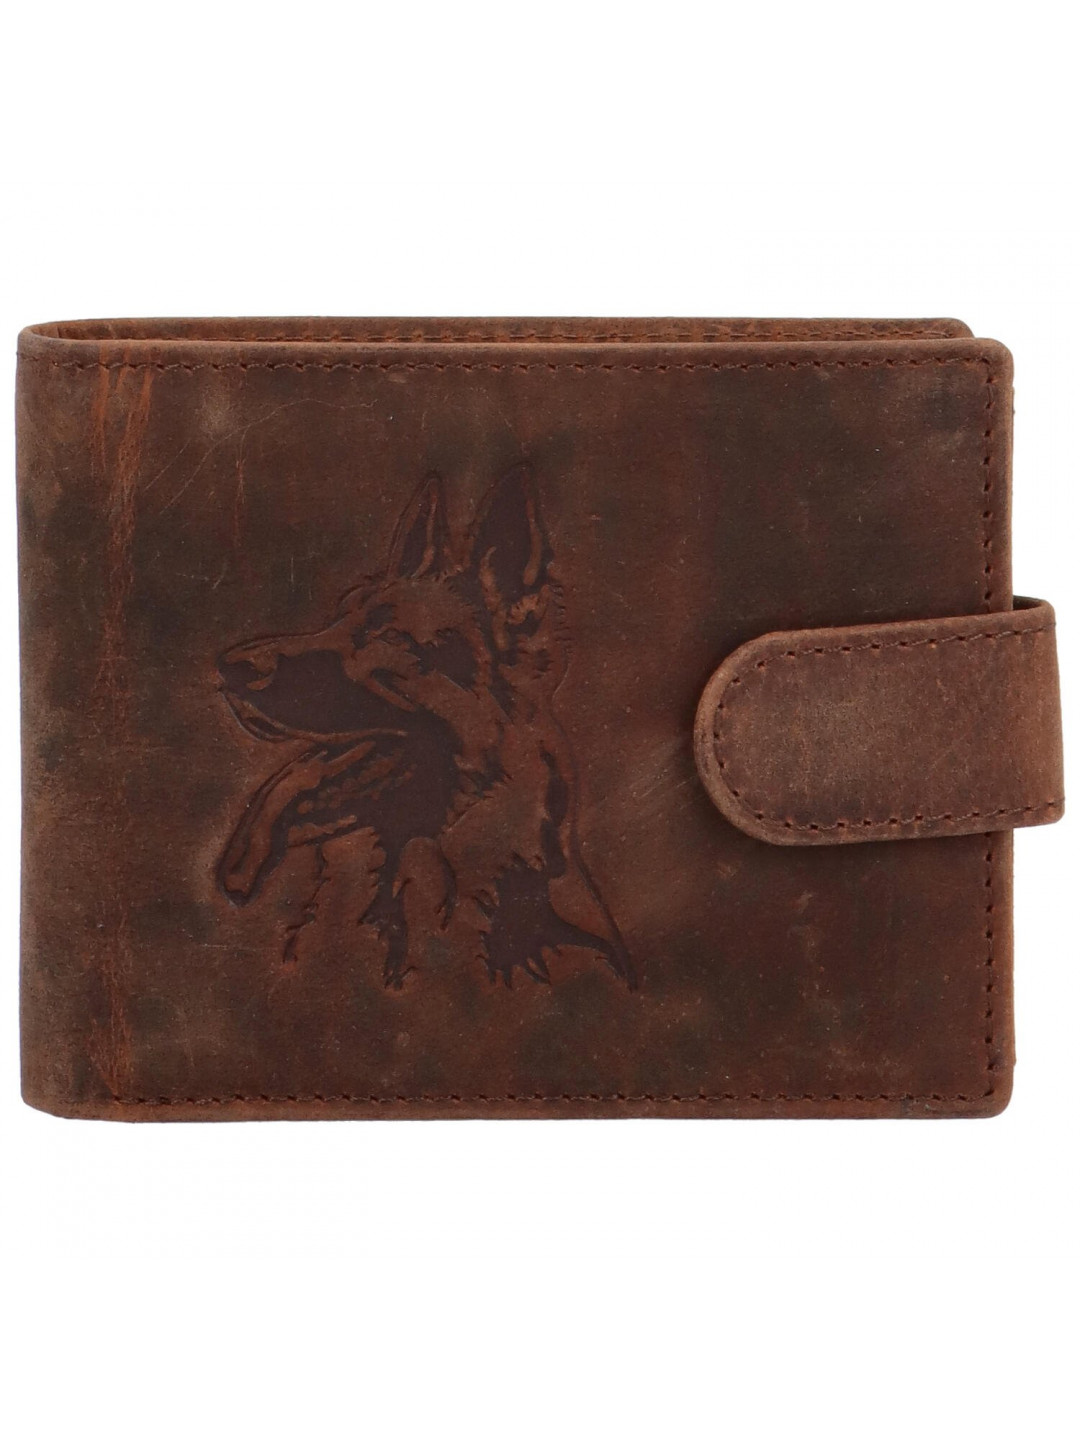 Pánská kožená peněženka hnědá – Bellugio Yeryss Pes